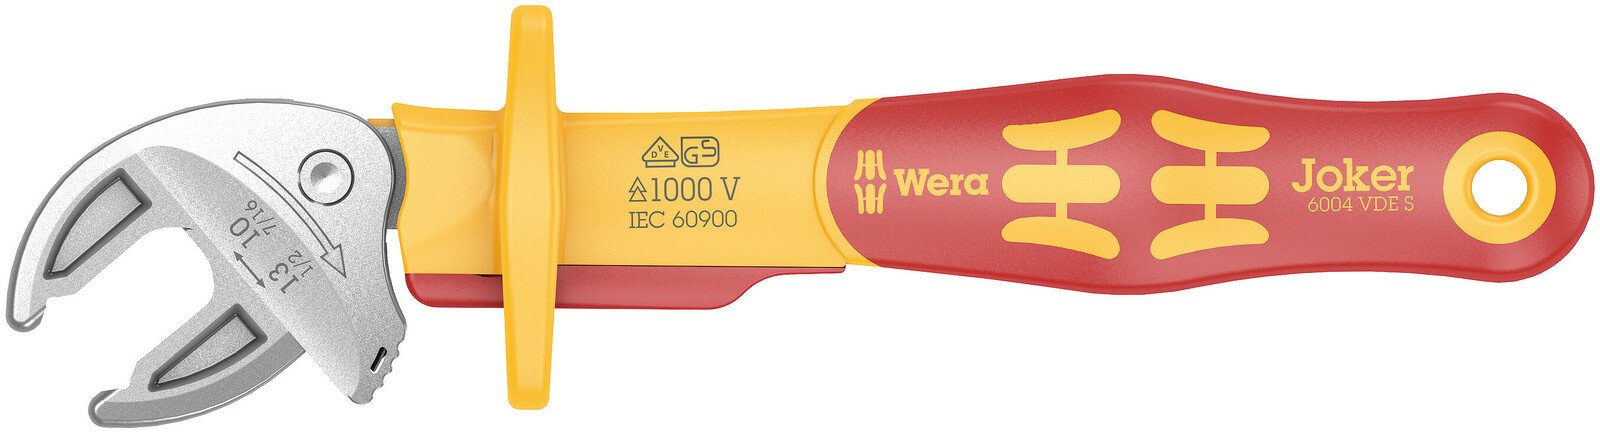 Wera – Haus of Tools